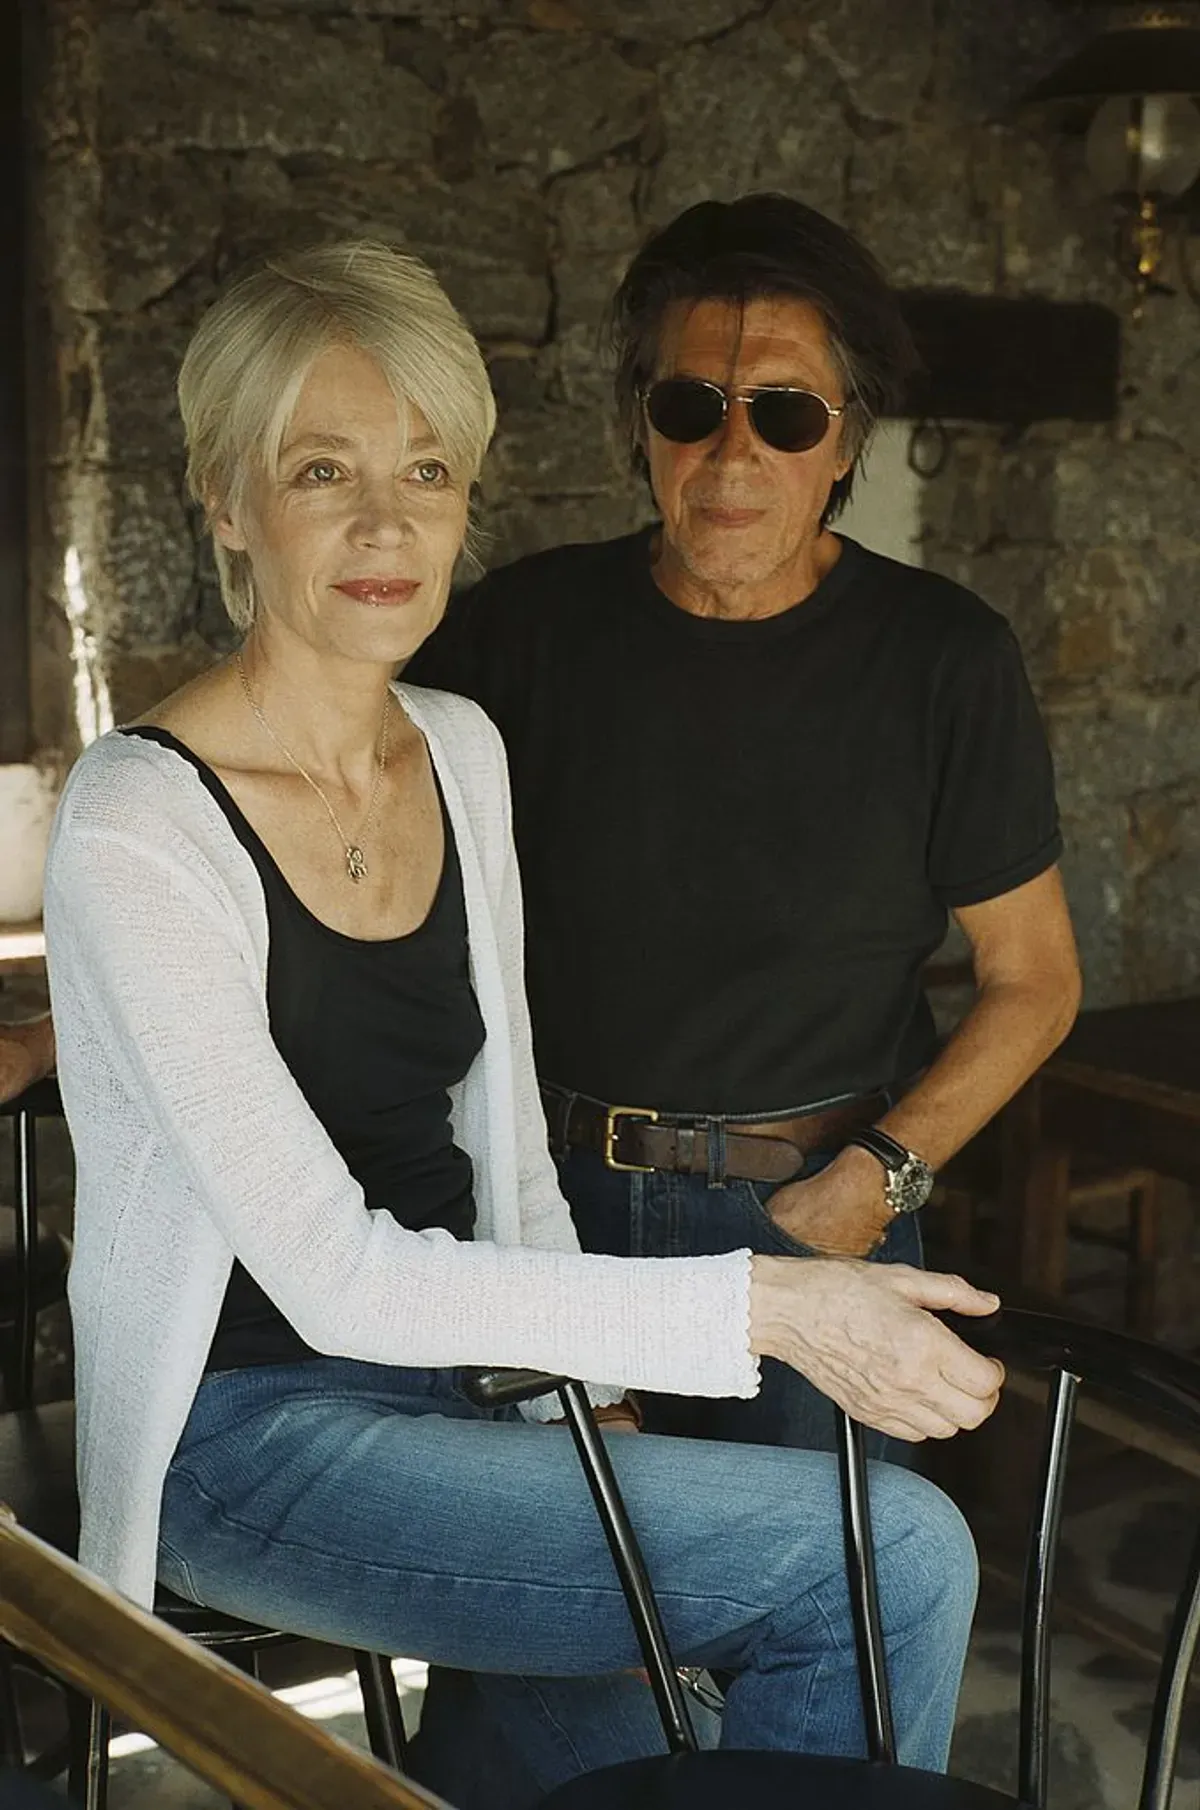 Jacques DUTRONC et Françoise HARDY dans leur maison de Monticello en Haute-Corse: le couple côte à côte près du bar installé sur la terrasse. | Photo : Getty Images